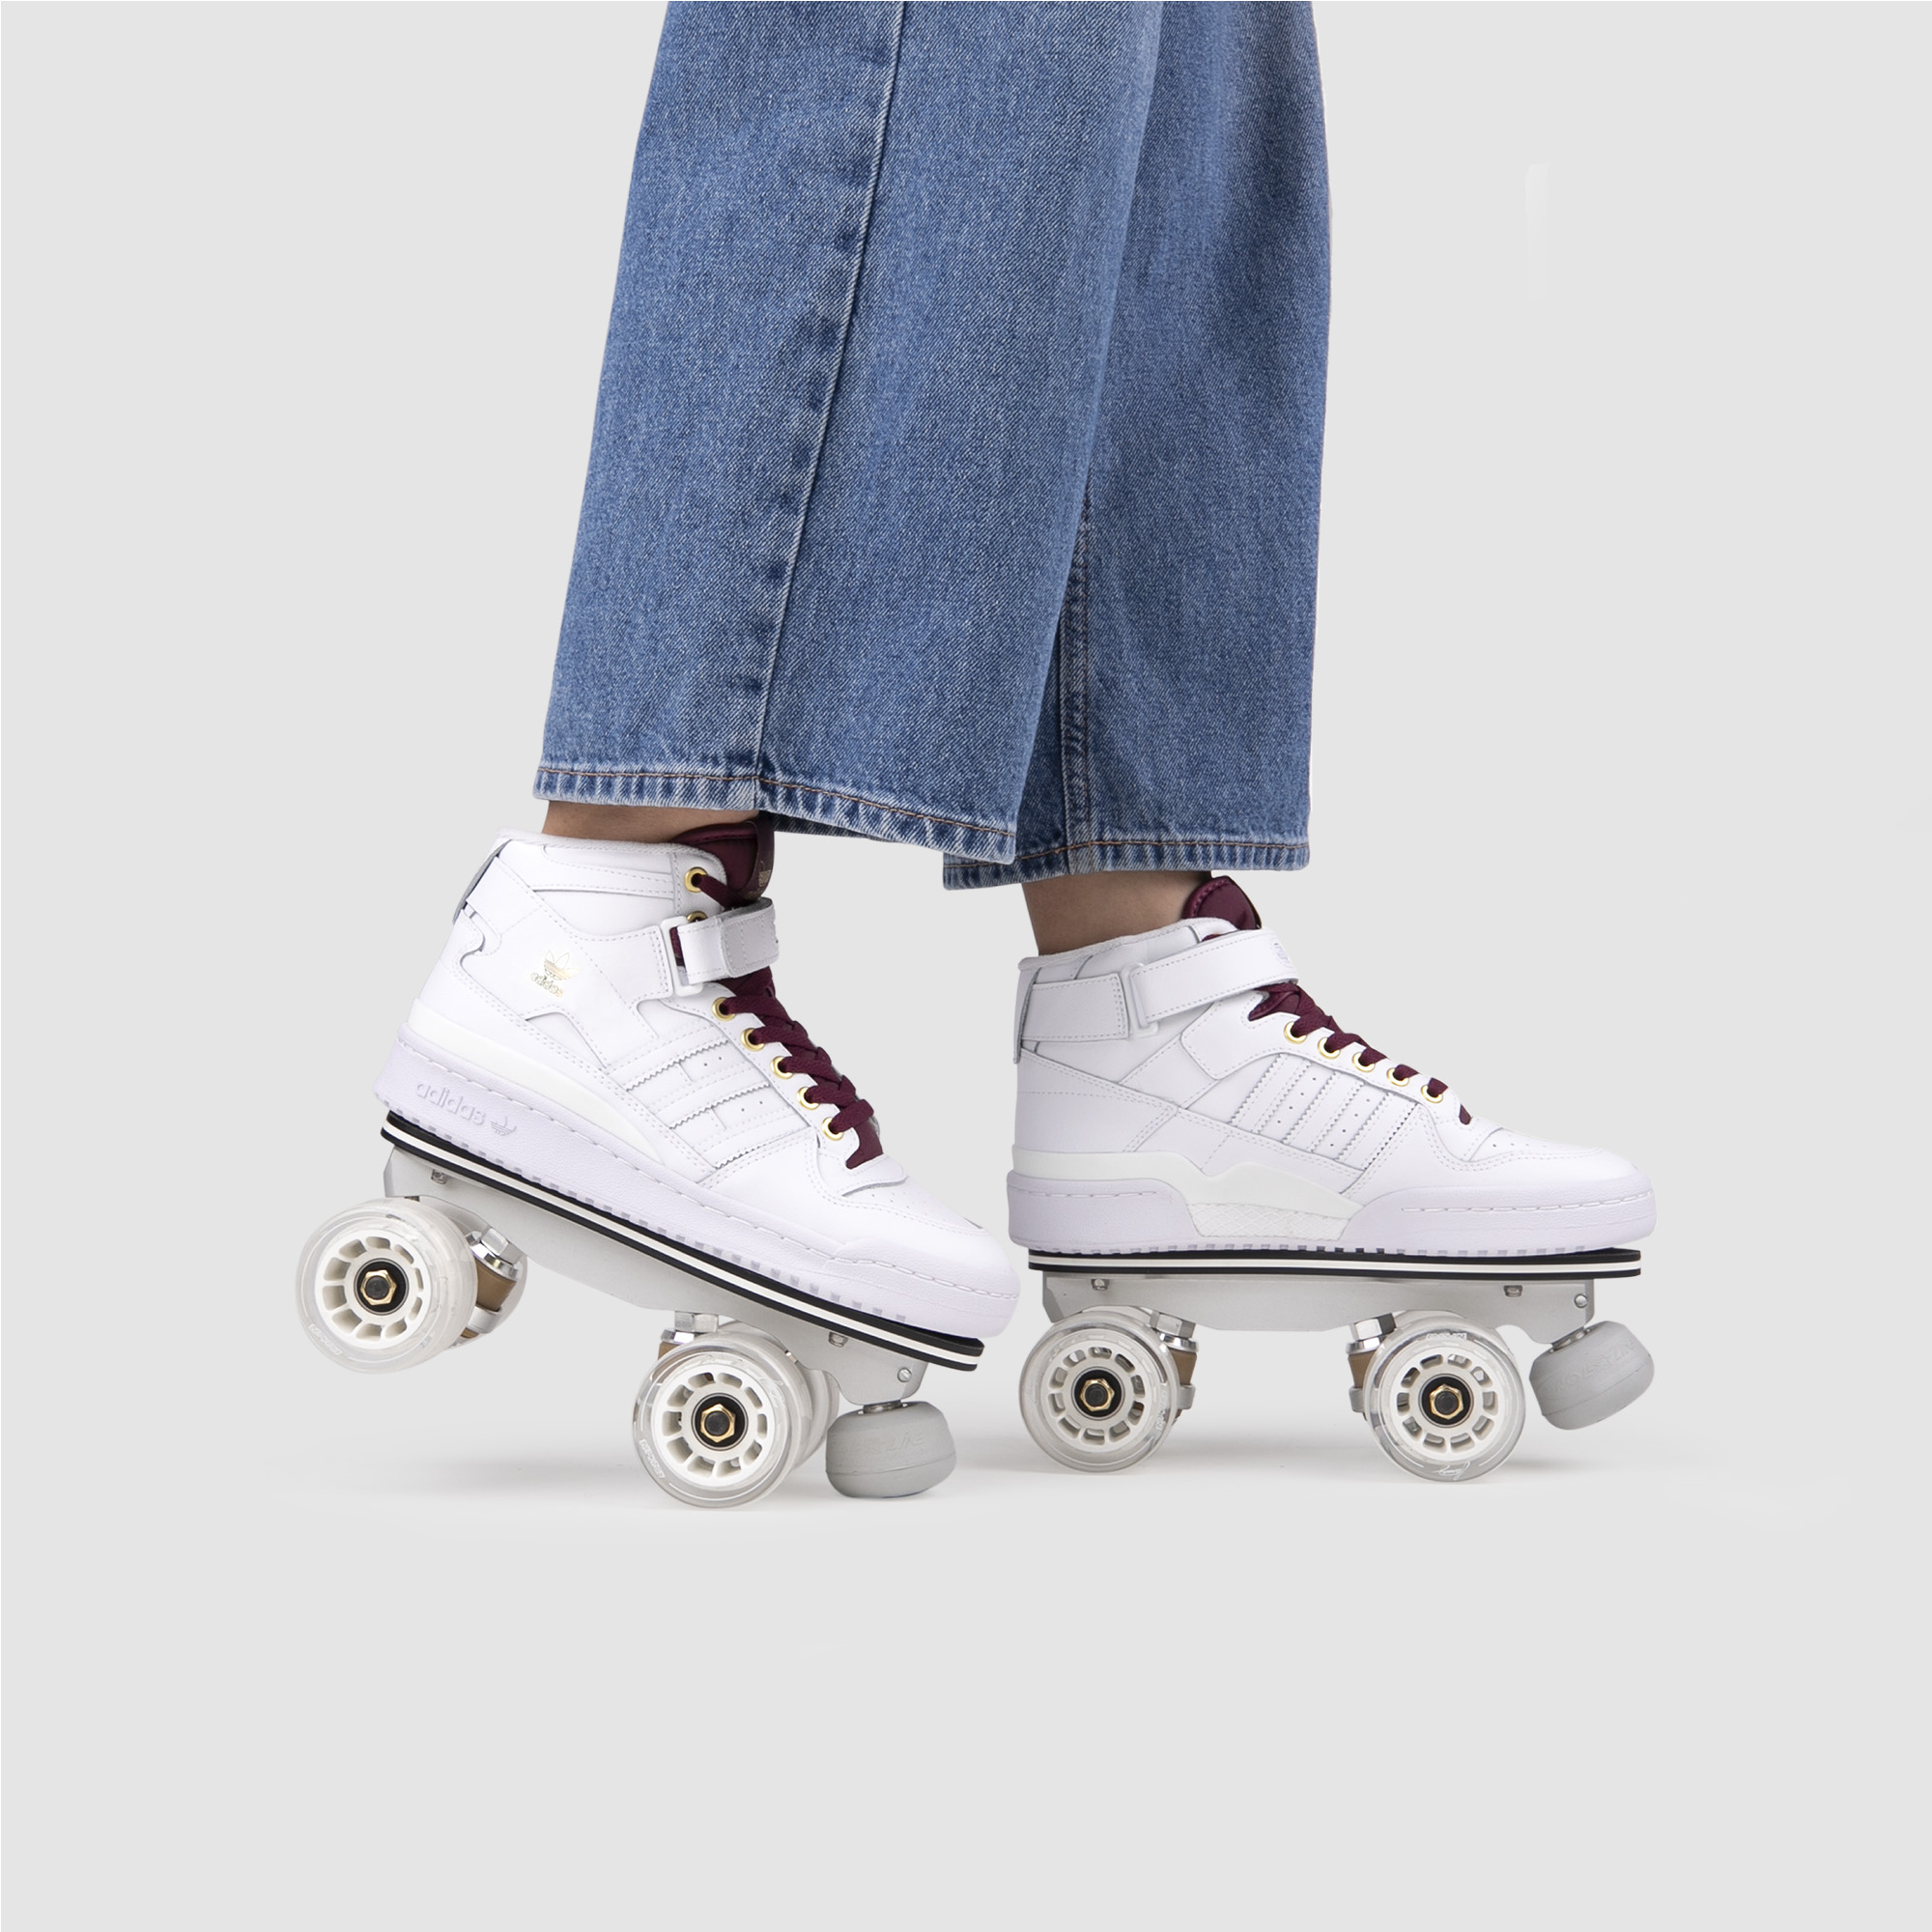 Full roller skates